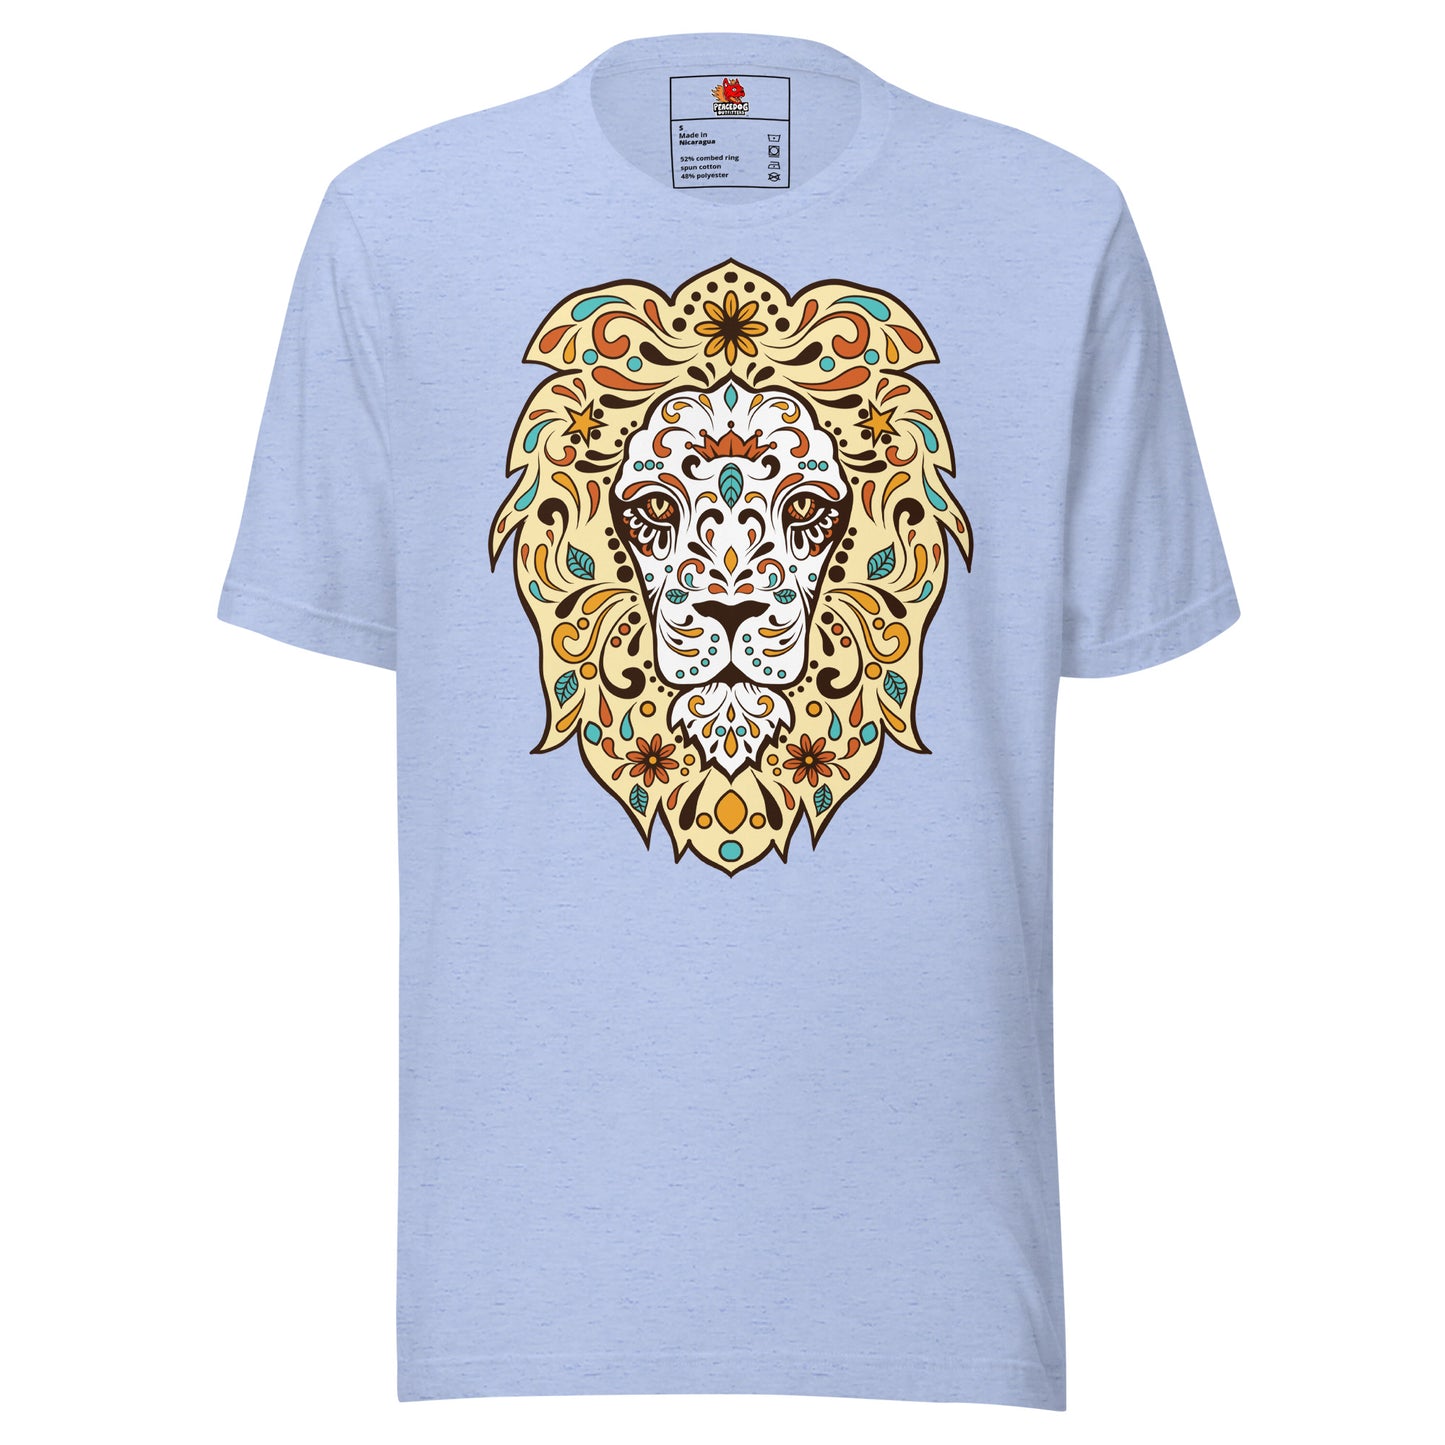 Exquisite Lion T-Shirt